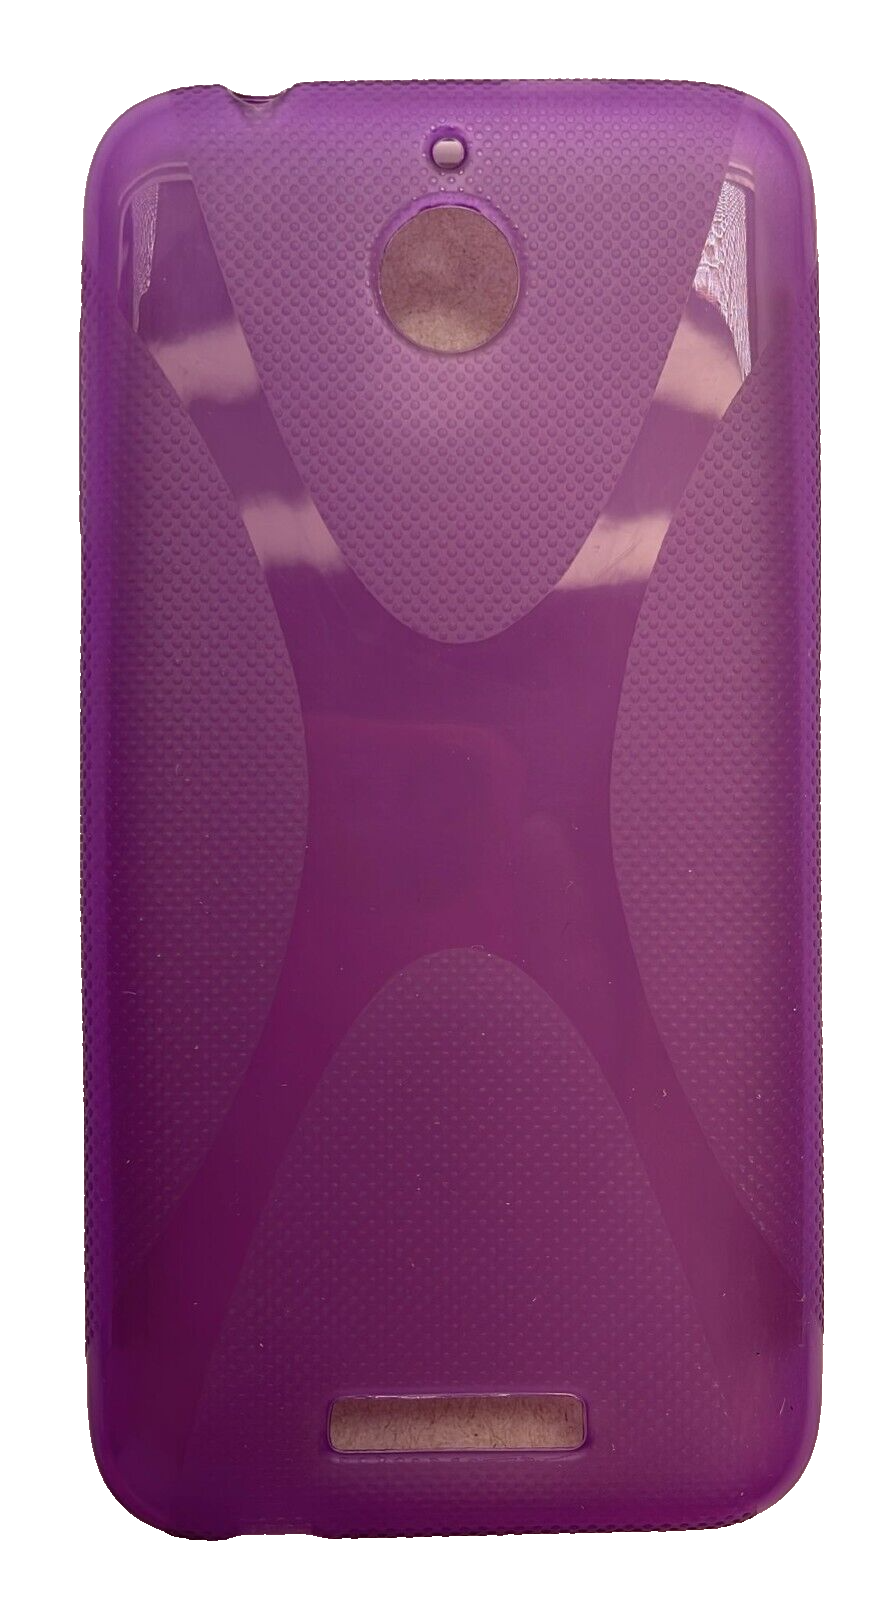 Sonne Premium Case for HTC Desire 510, Purple Sonne